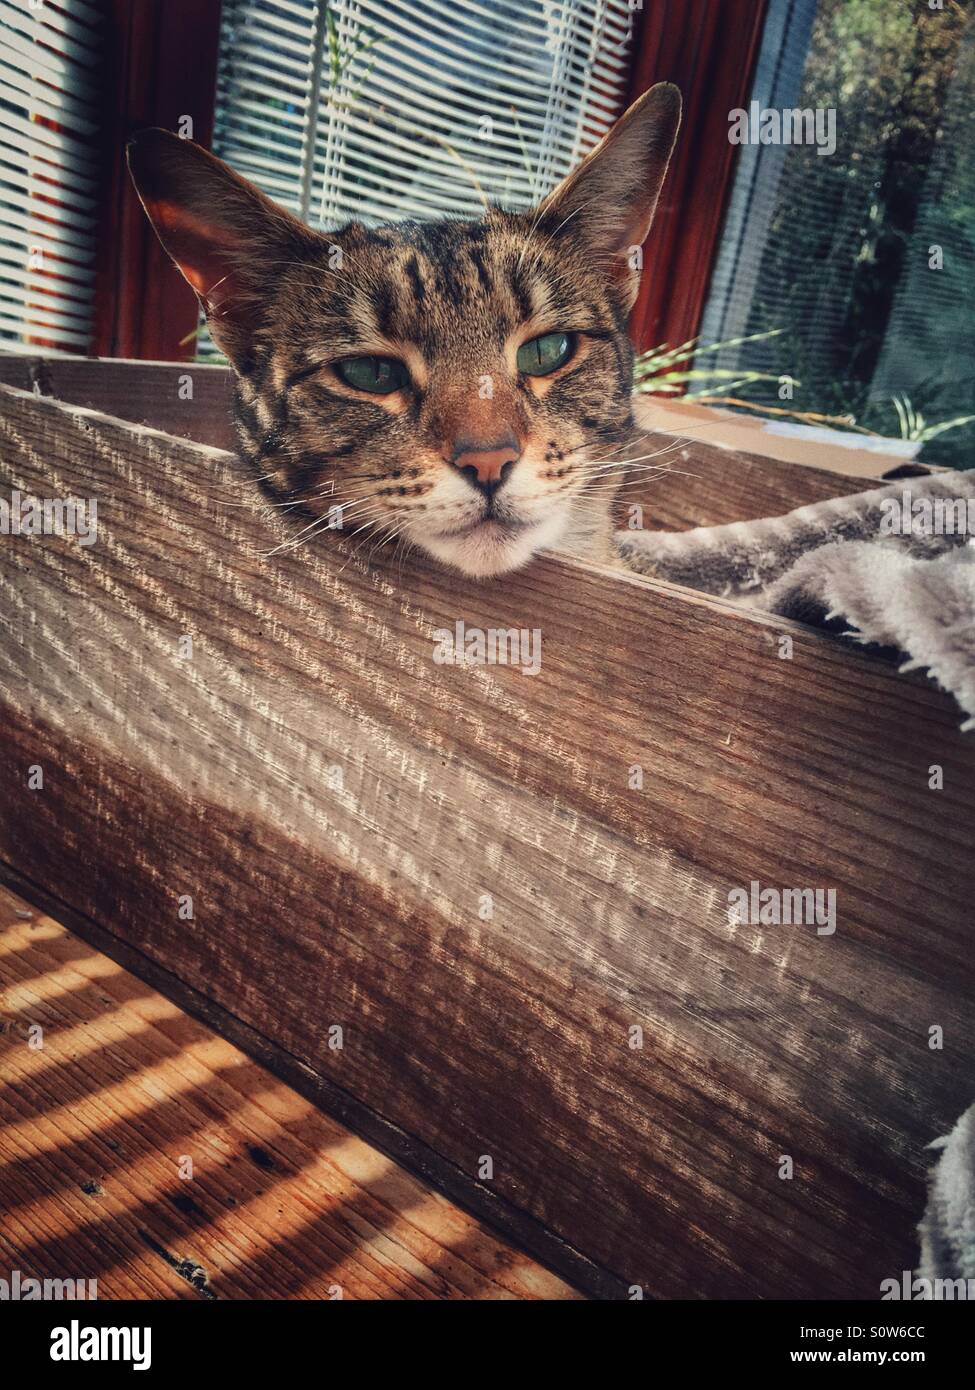 Chat tigré assis dans une boîte en bois, avec du soleil grâce à des stores vénitiens Banque D'Images